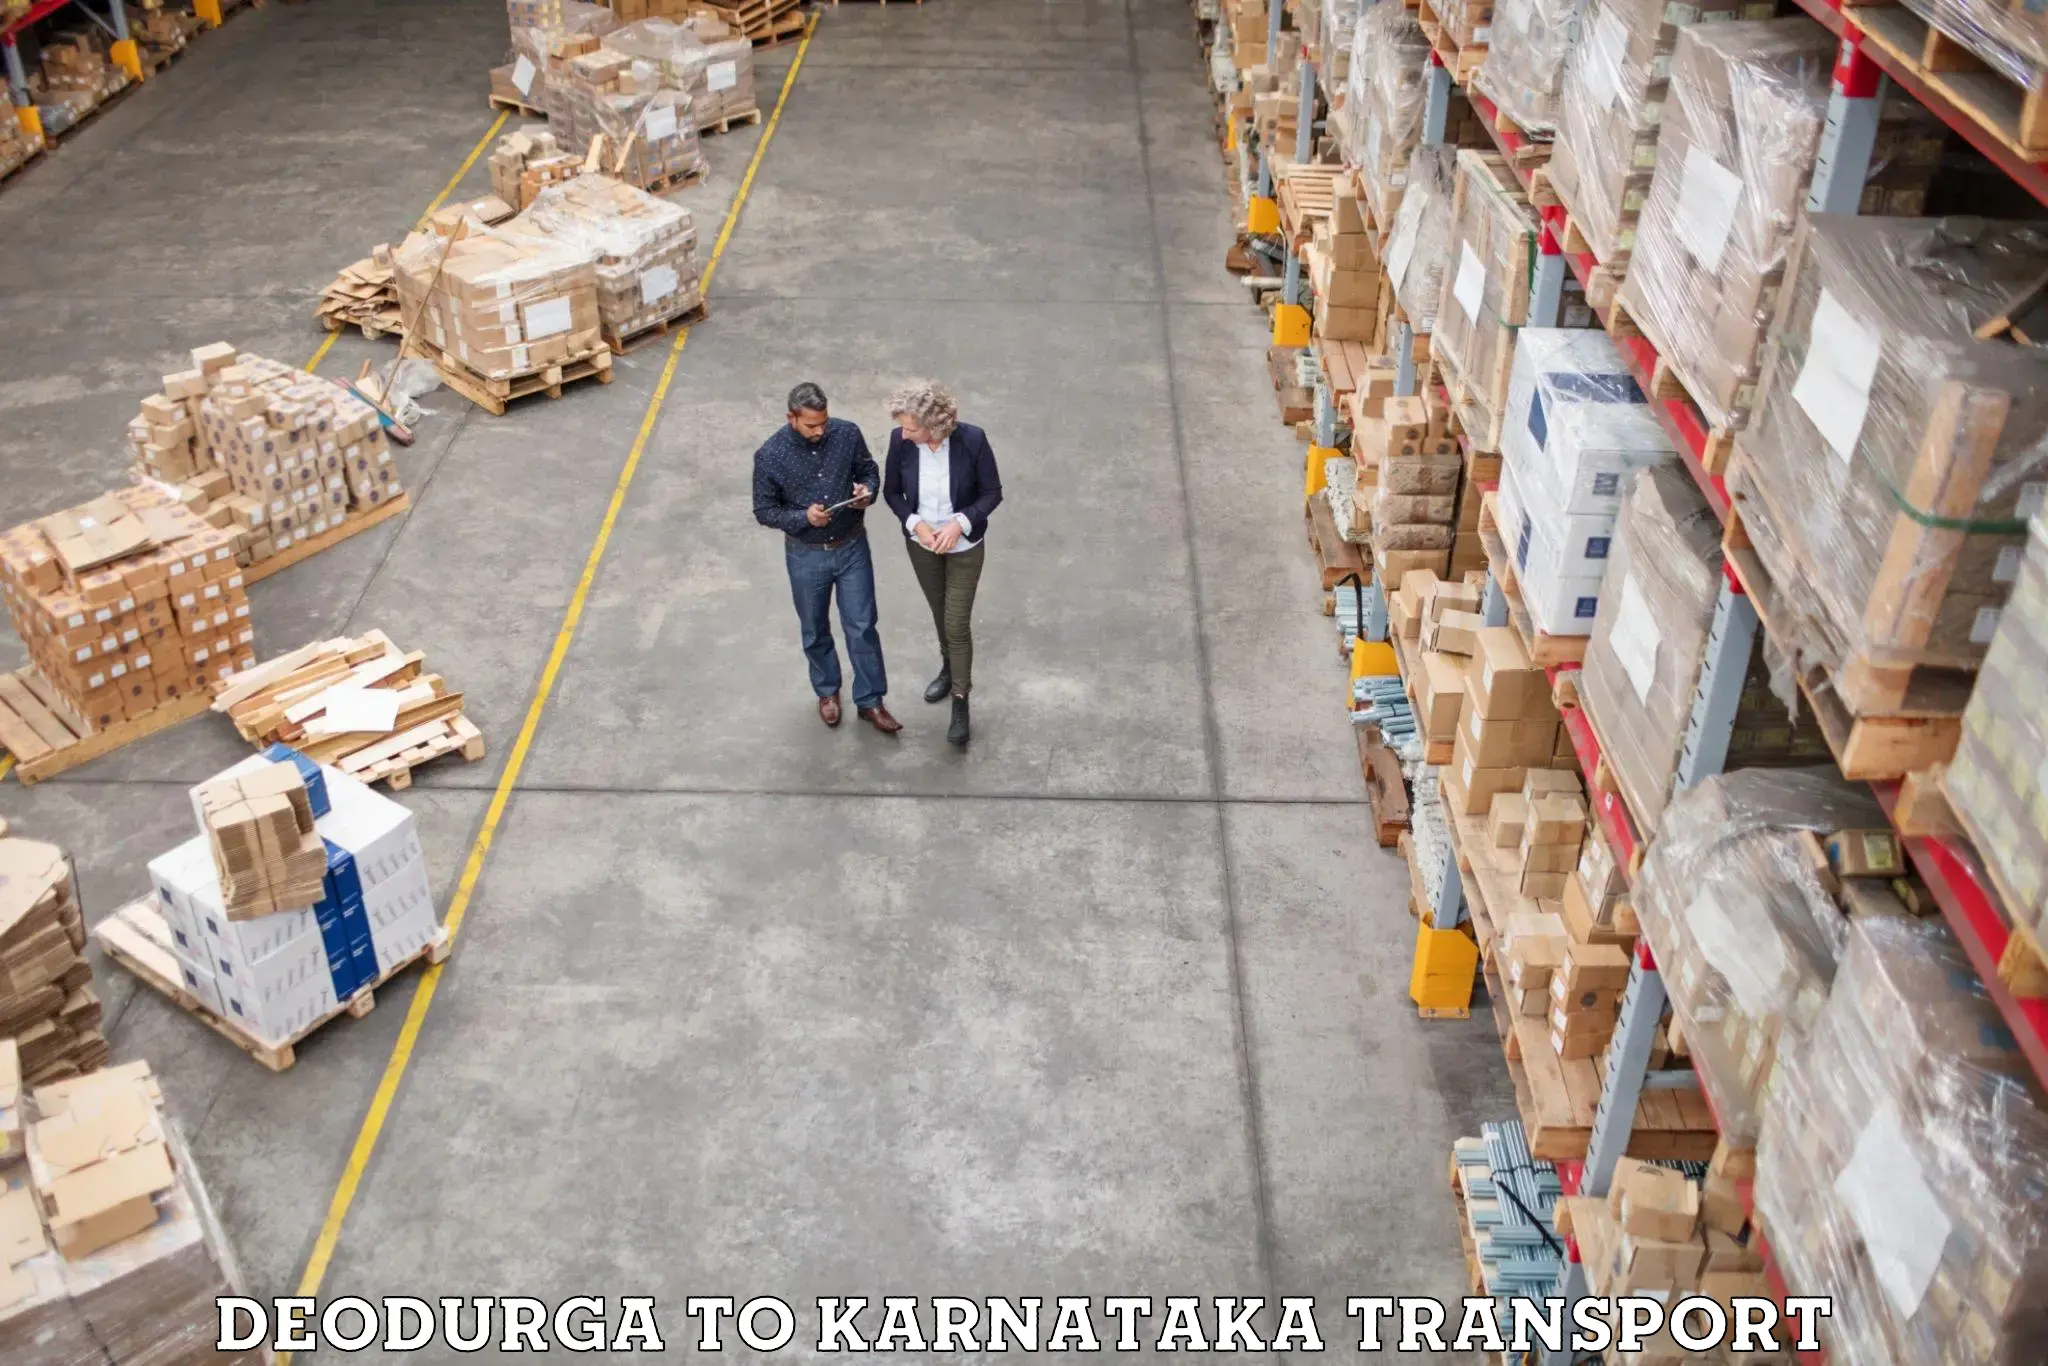 Cargo train transport services Deodurga to Ankola